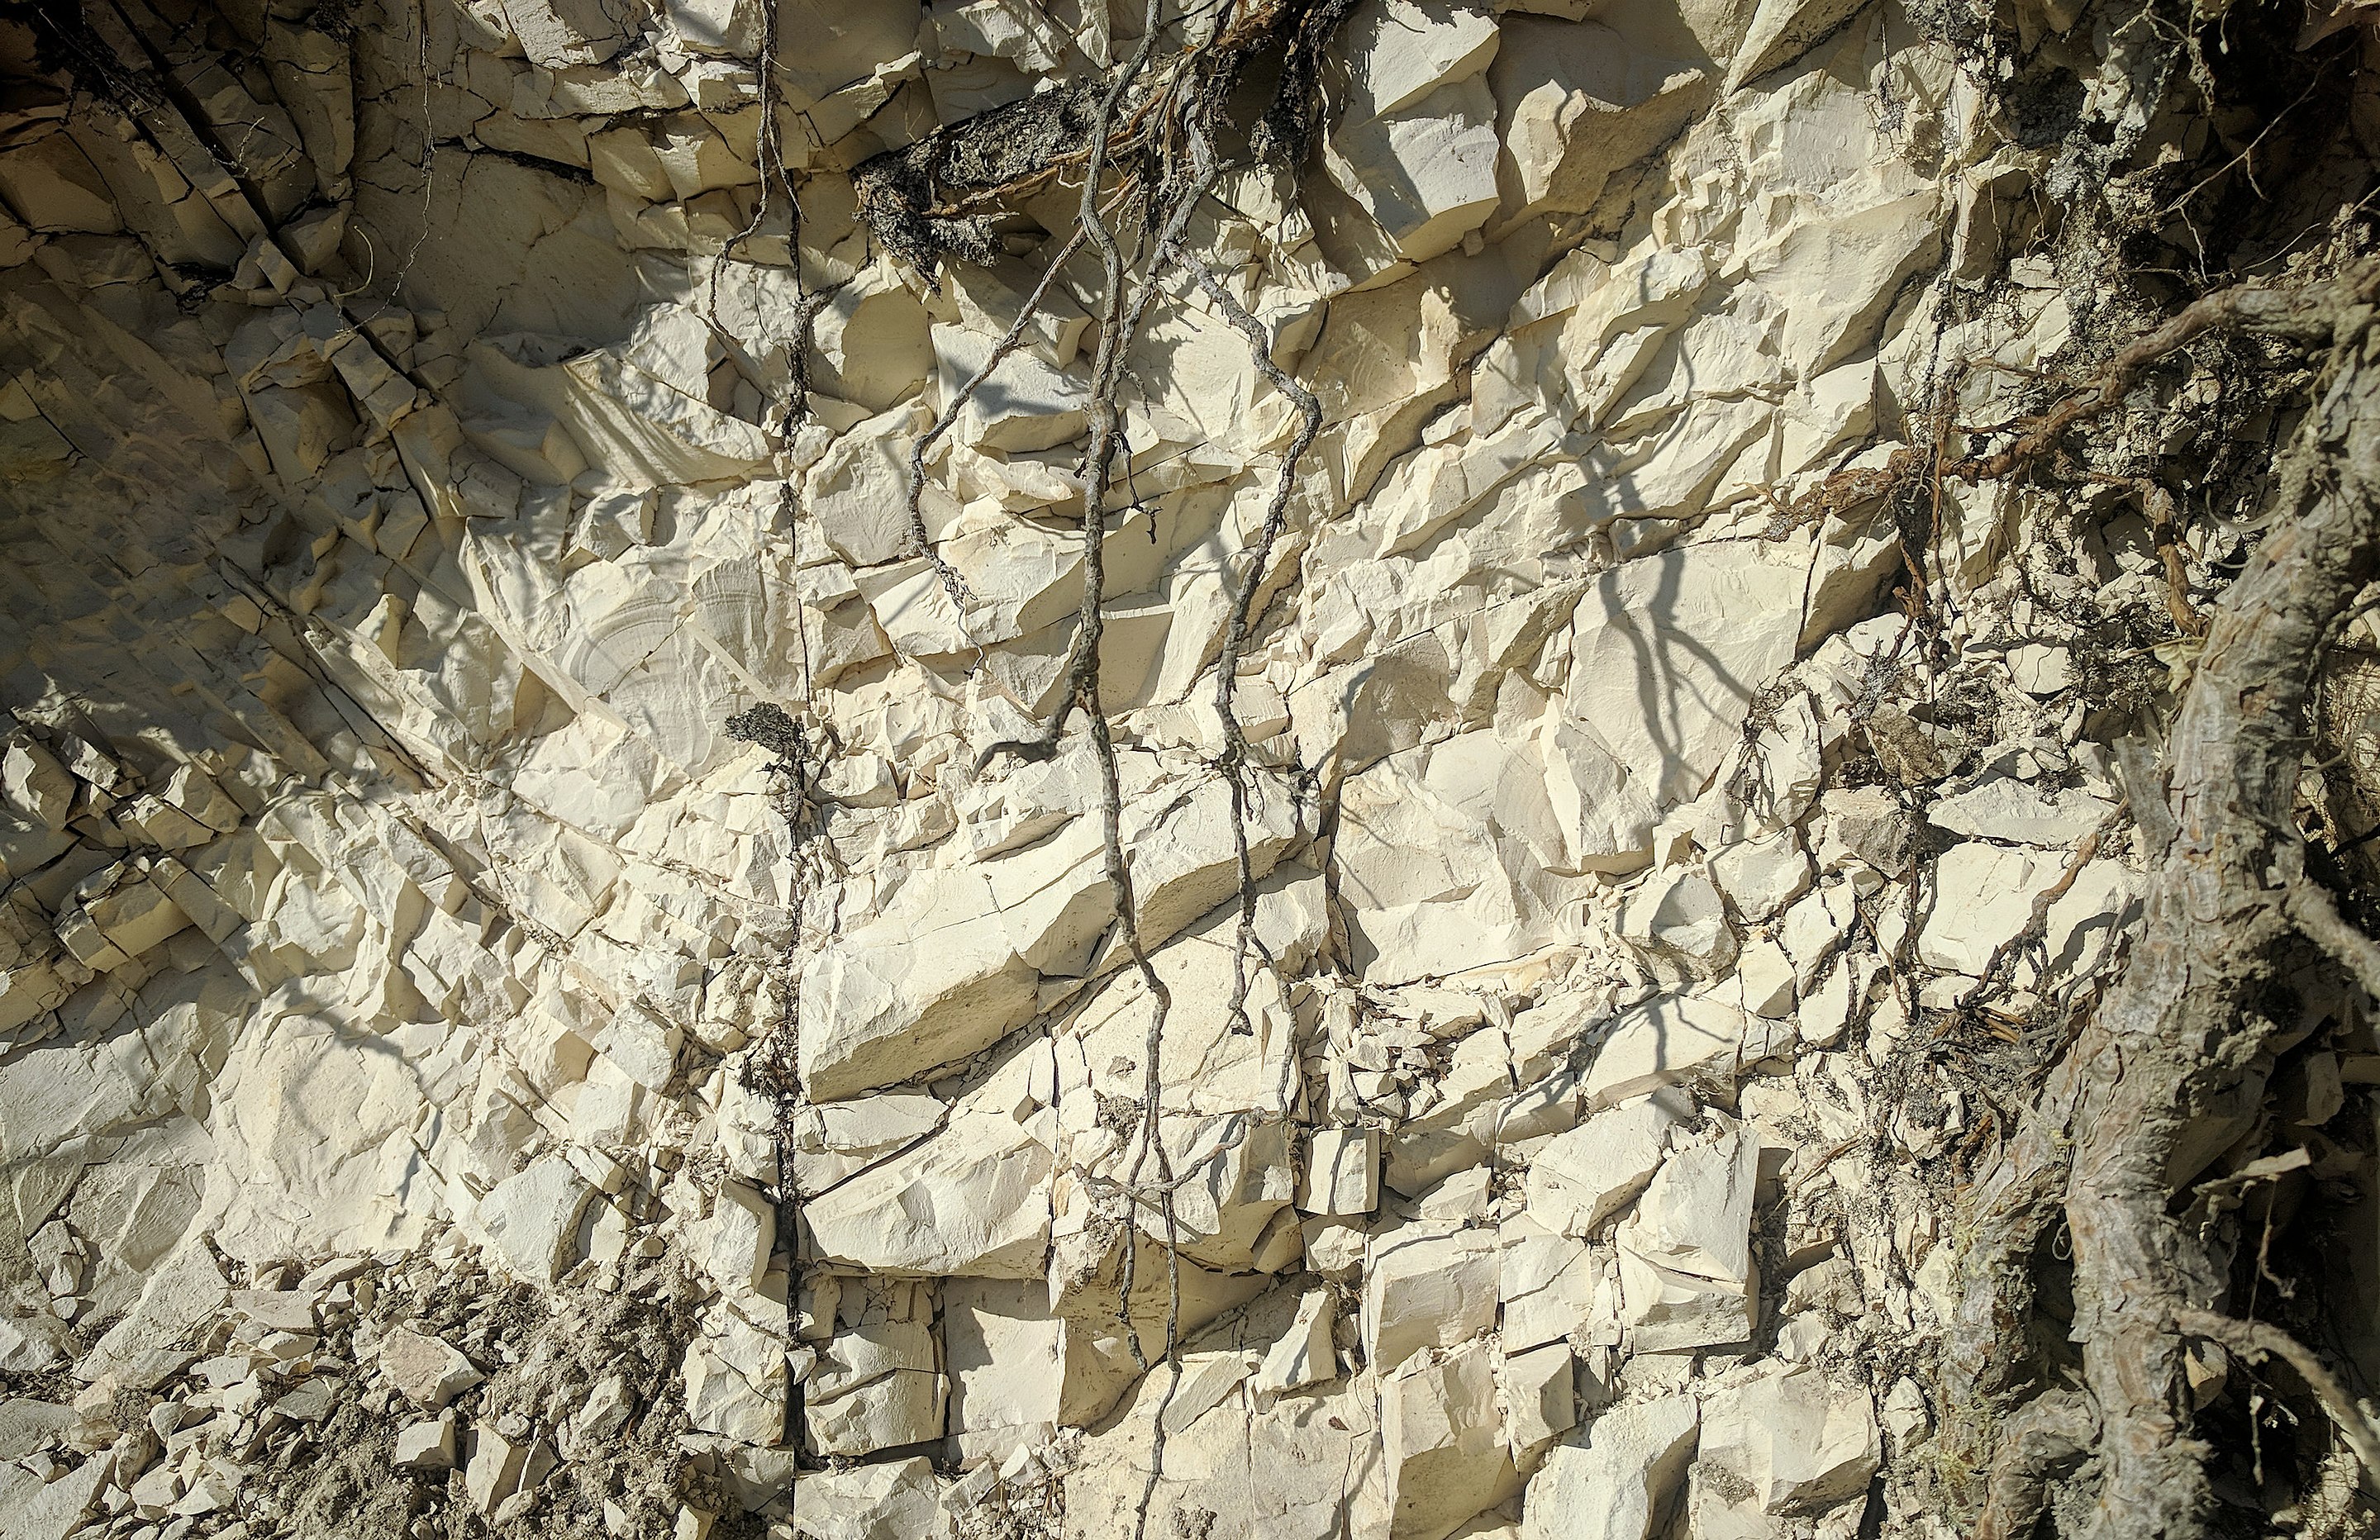 Limestone_Eocene_deposit_at_Sinj_Stari_grad_-_Dalmatia_-_Croatia_IMG_20210820_083857.jpg